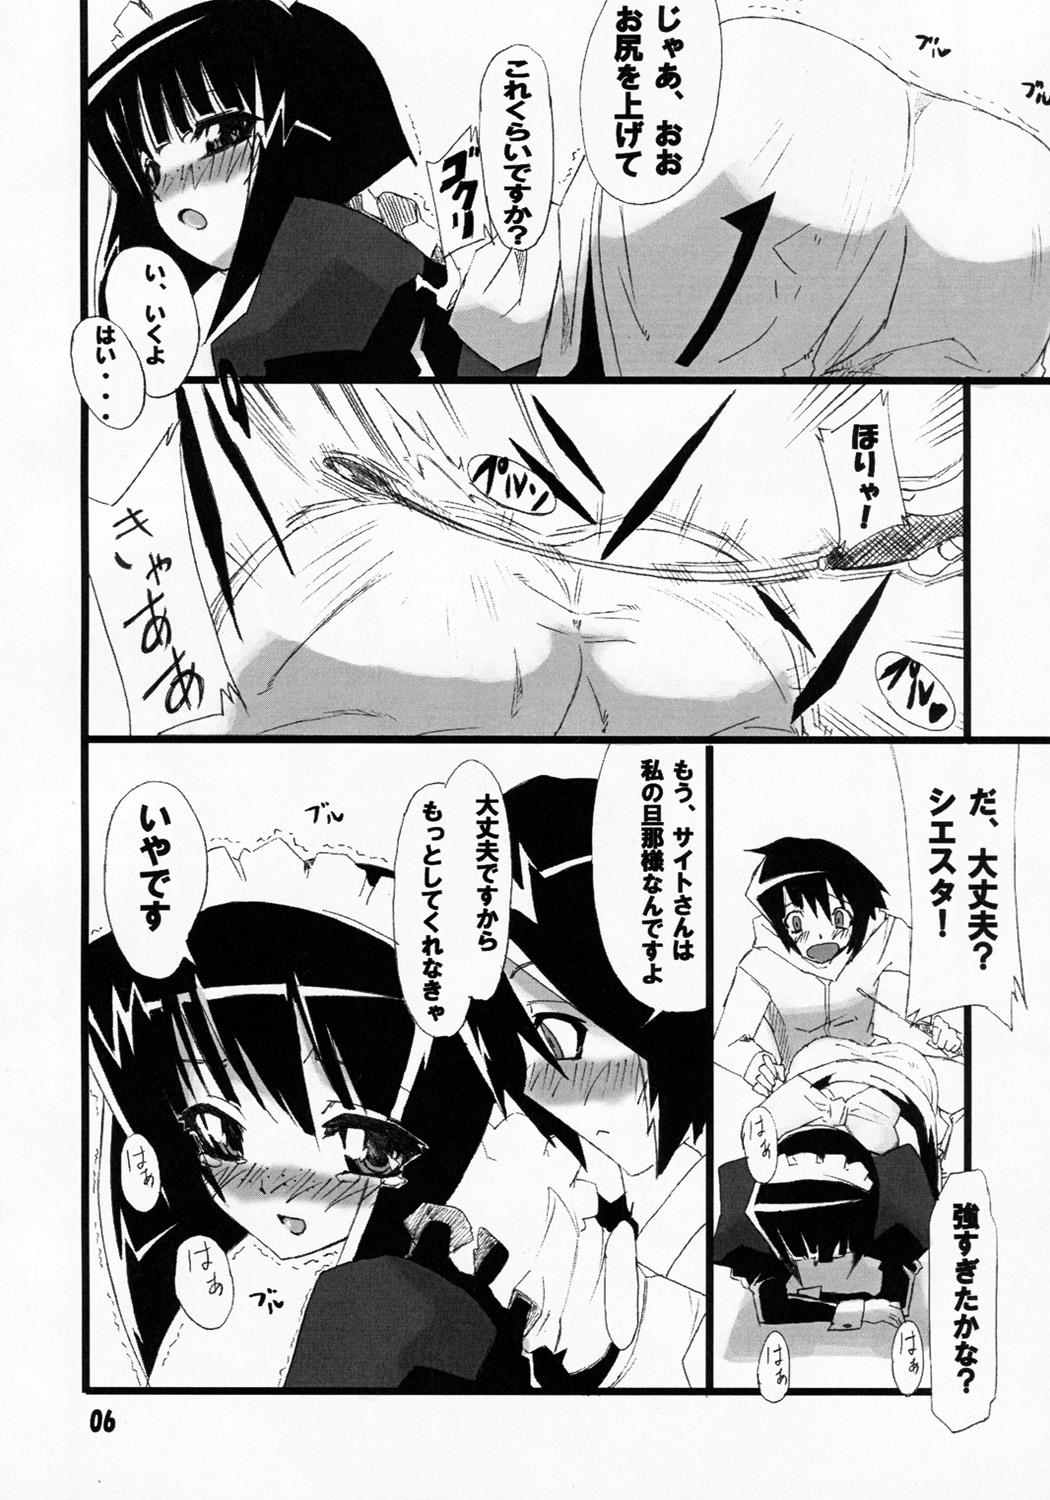 Best Blowjob Siesta-san no Nounai Jijou. - Zero no tsukaima Teensex - Page 5